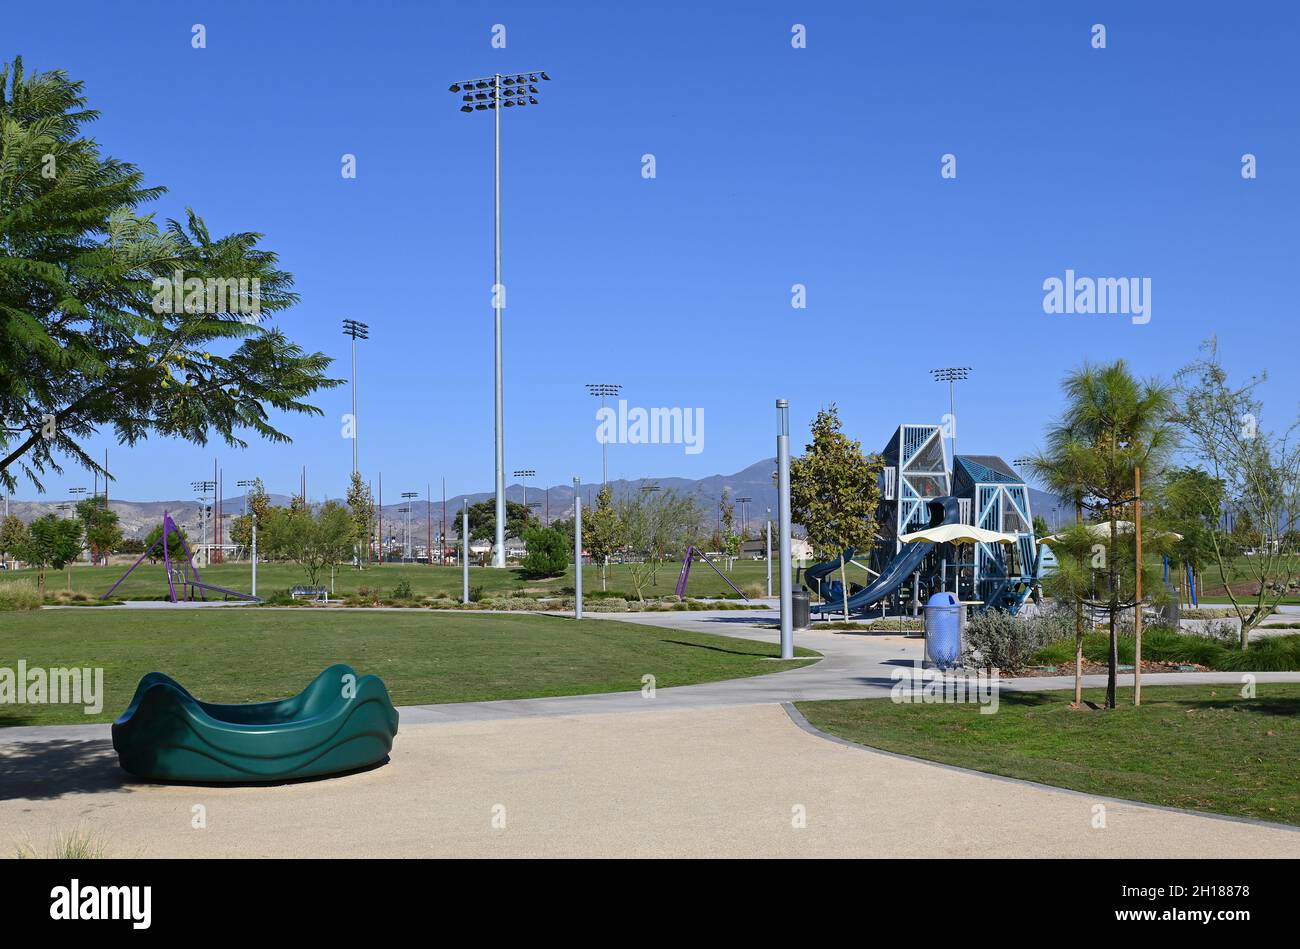 IRVINE, KALIFORNIEN - 15 Okt 2021: Der Kinderspielplatz mit verschiedenen Geräten für kleine Kinder. Stockfoto